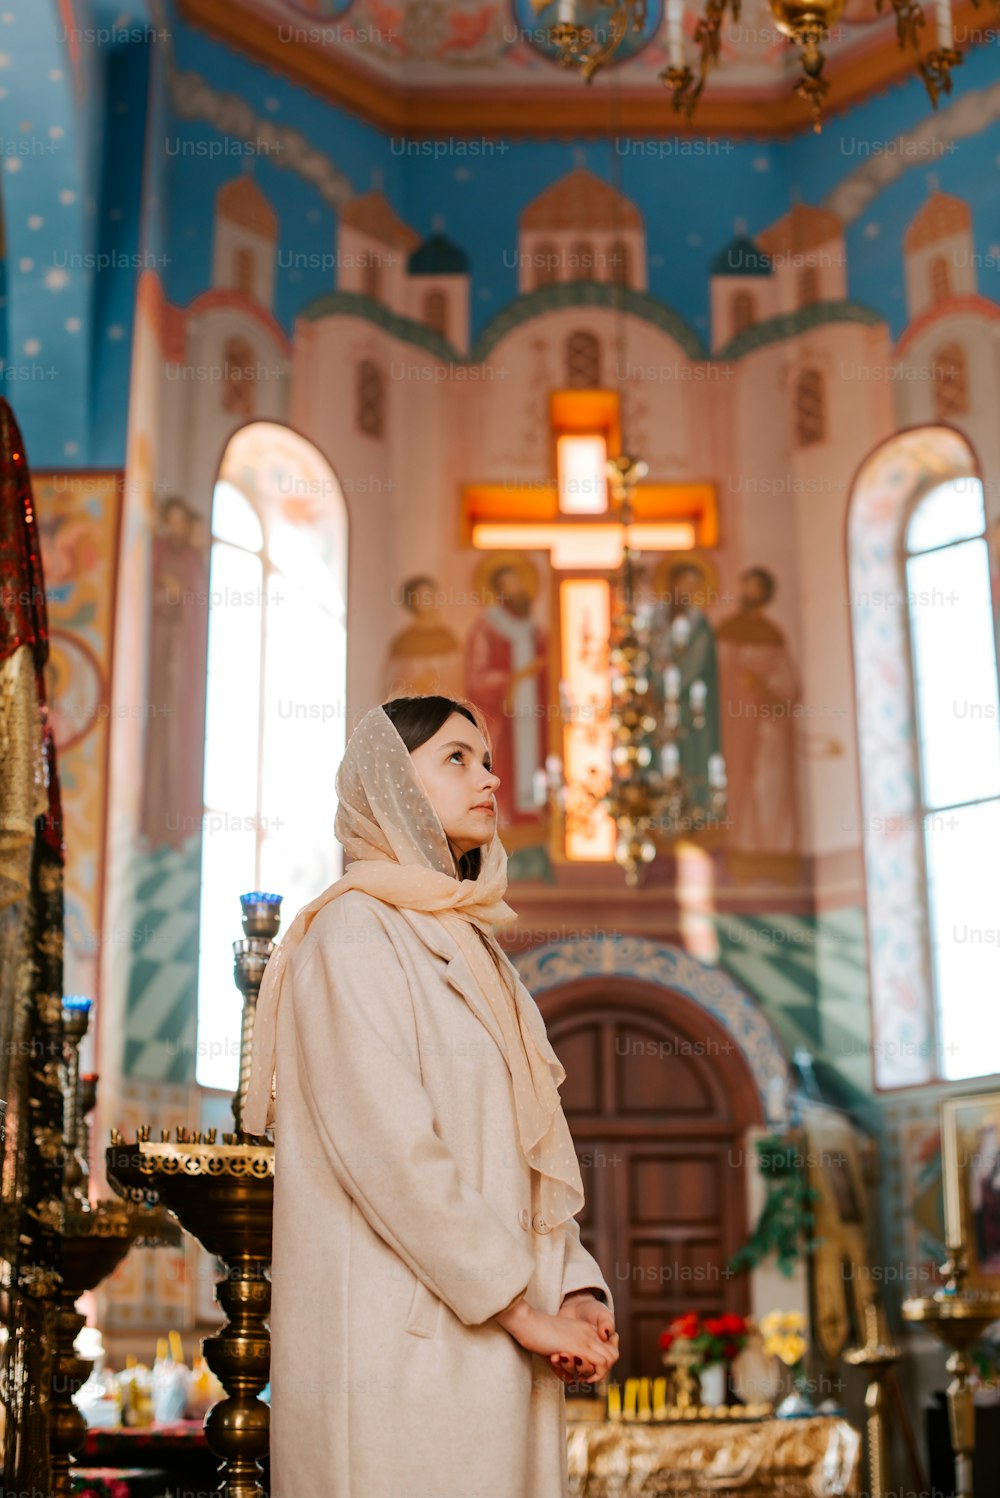 Une femme portant un voile debout dans une église